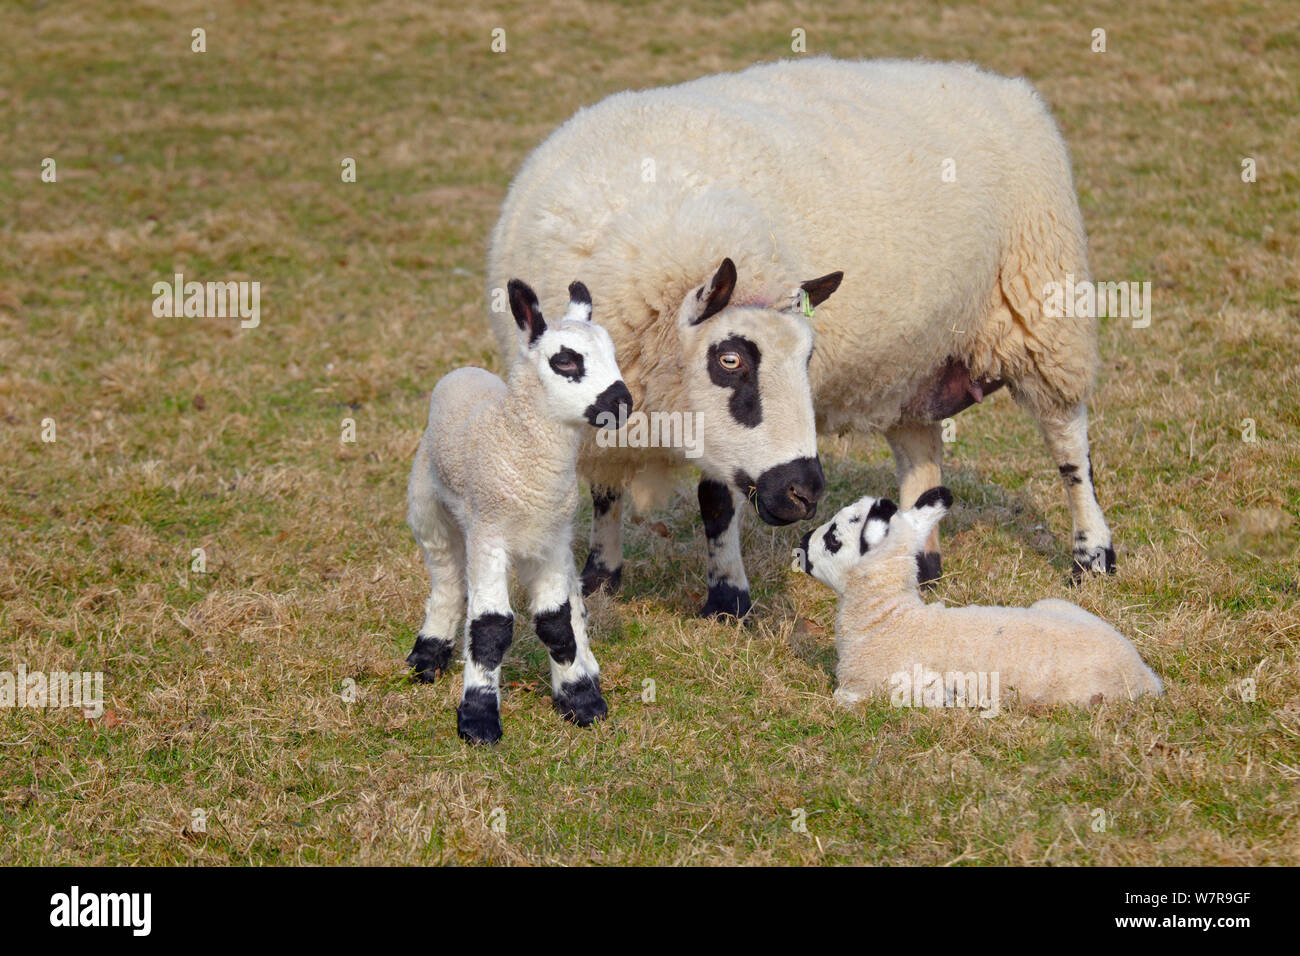 Kerry Hill les moutons et agneaux Brebis, UK, avril Banque D'Images